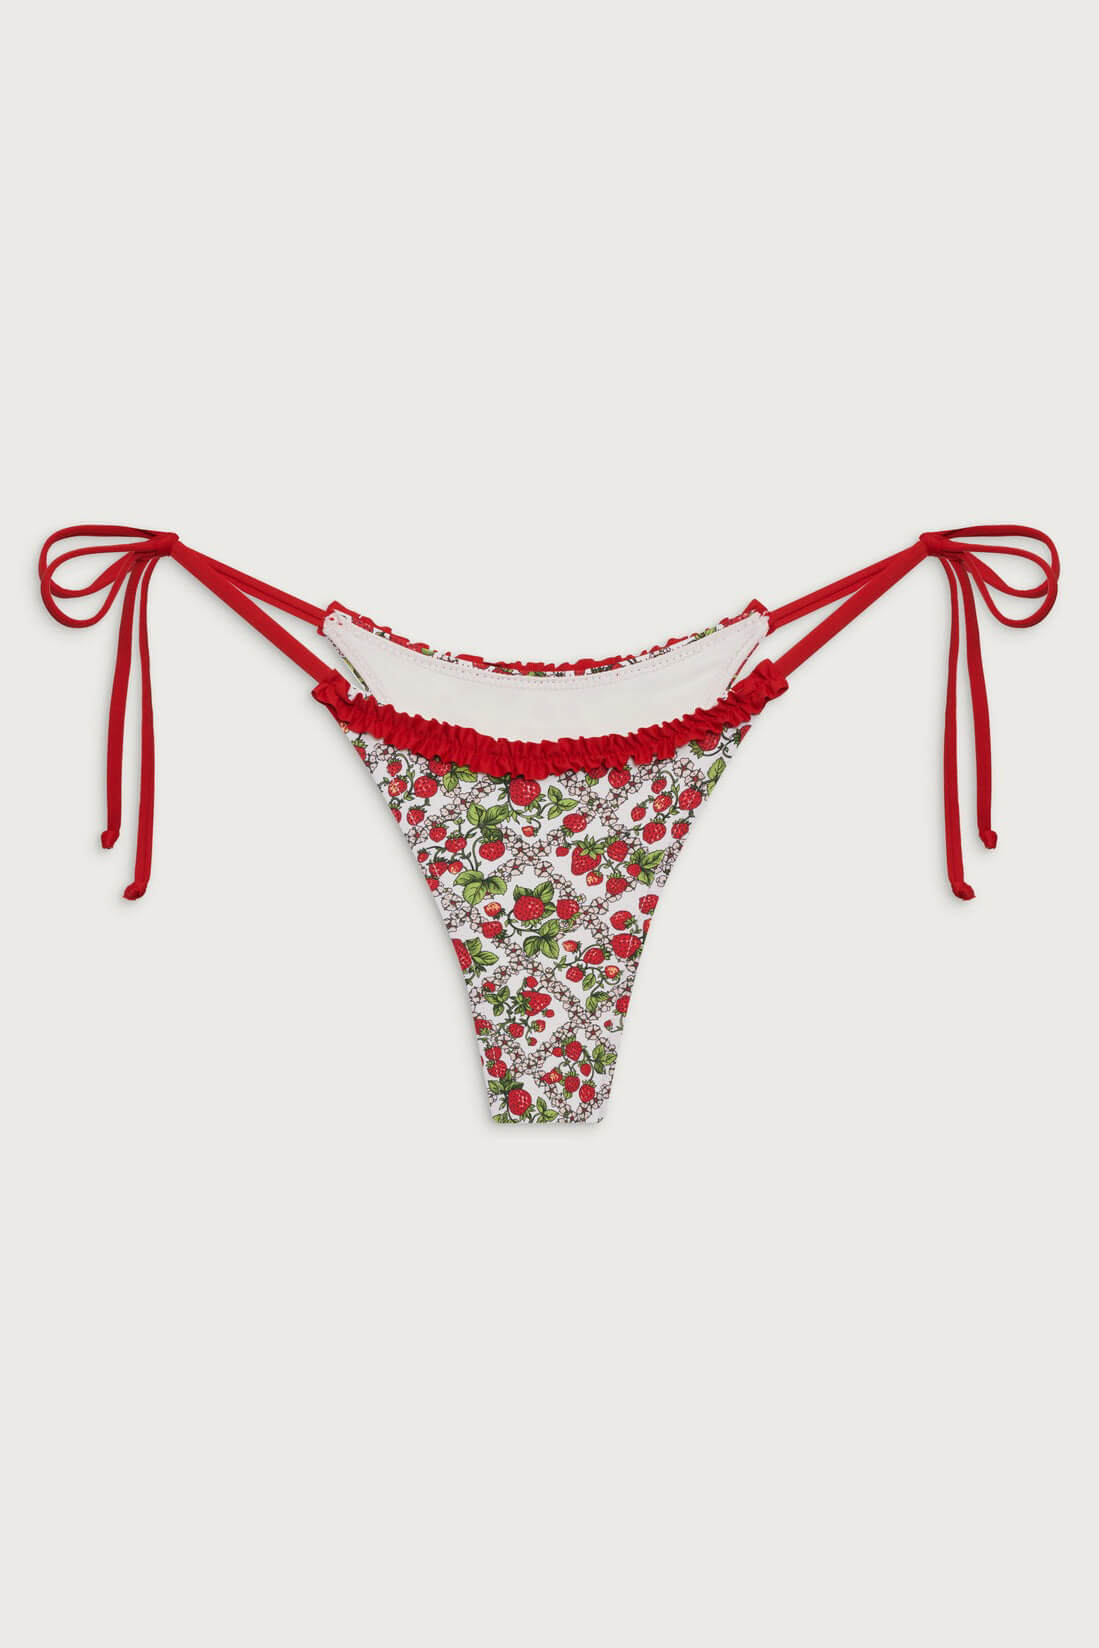 Frankies Bikinis divine bottom in berry in love